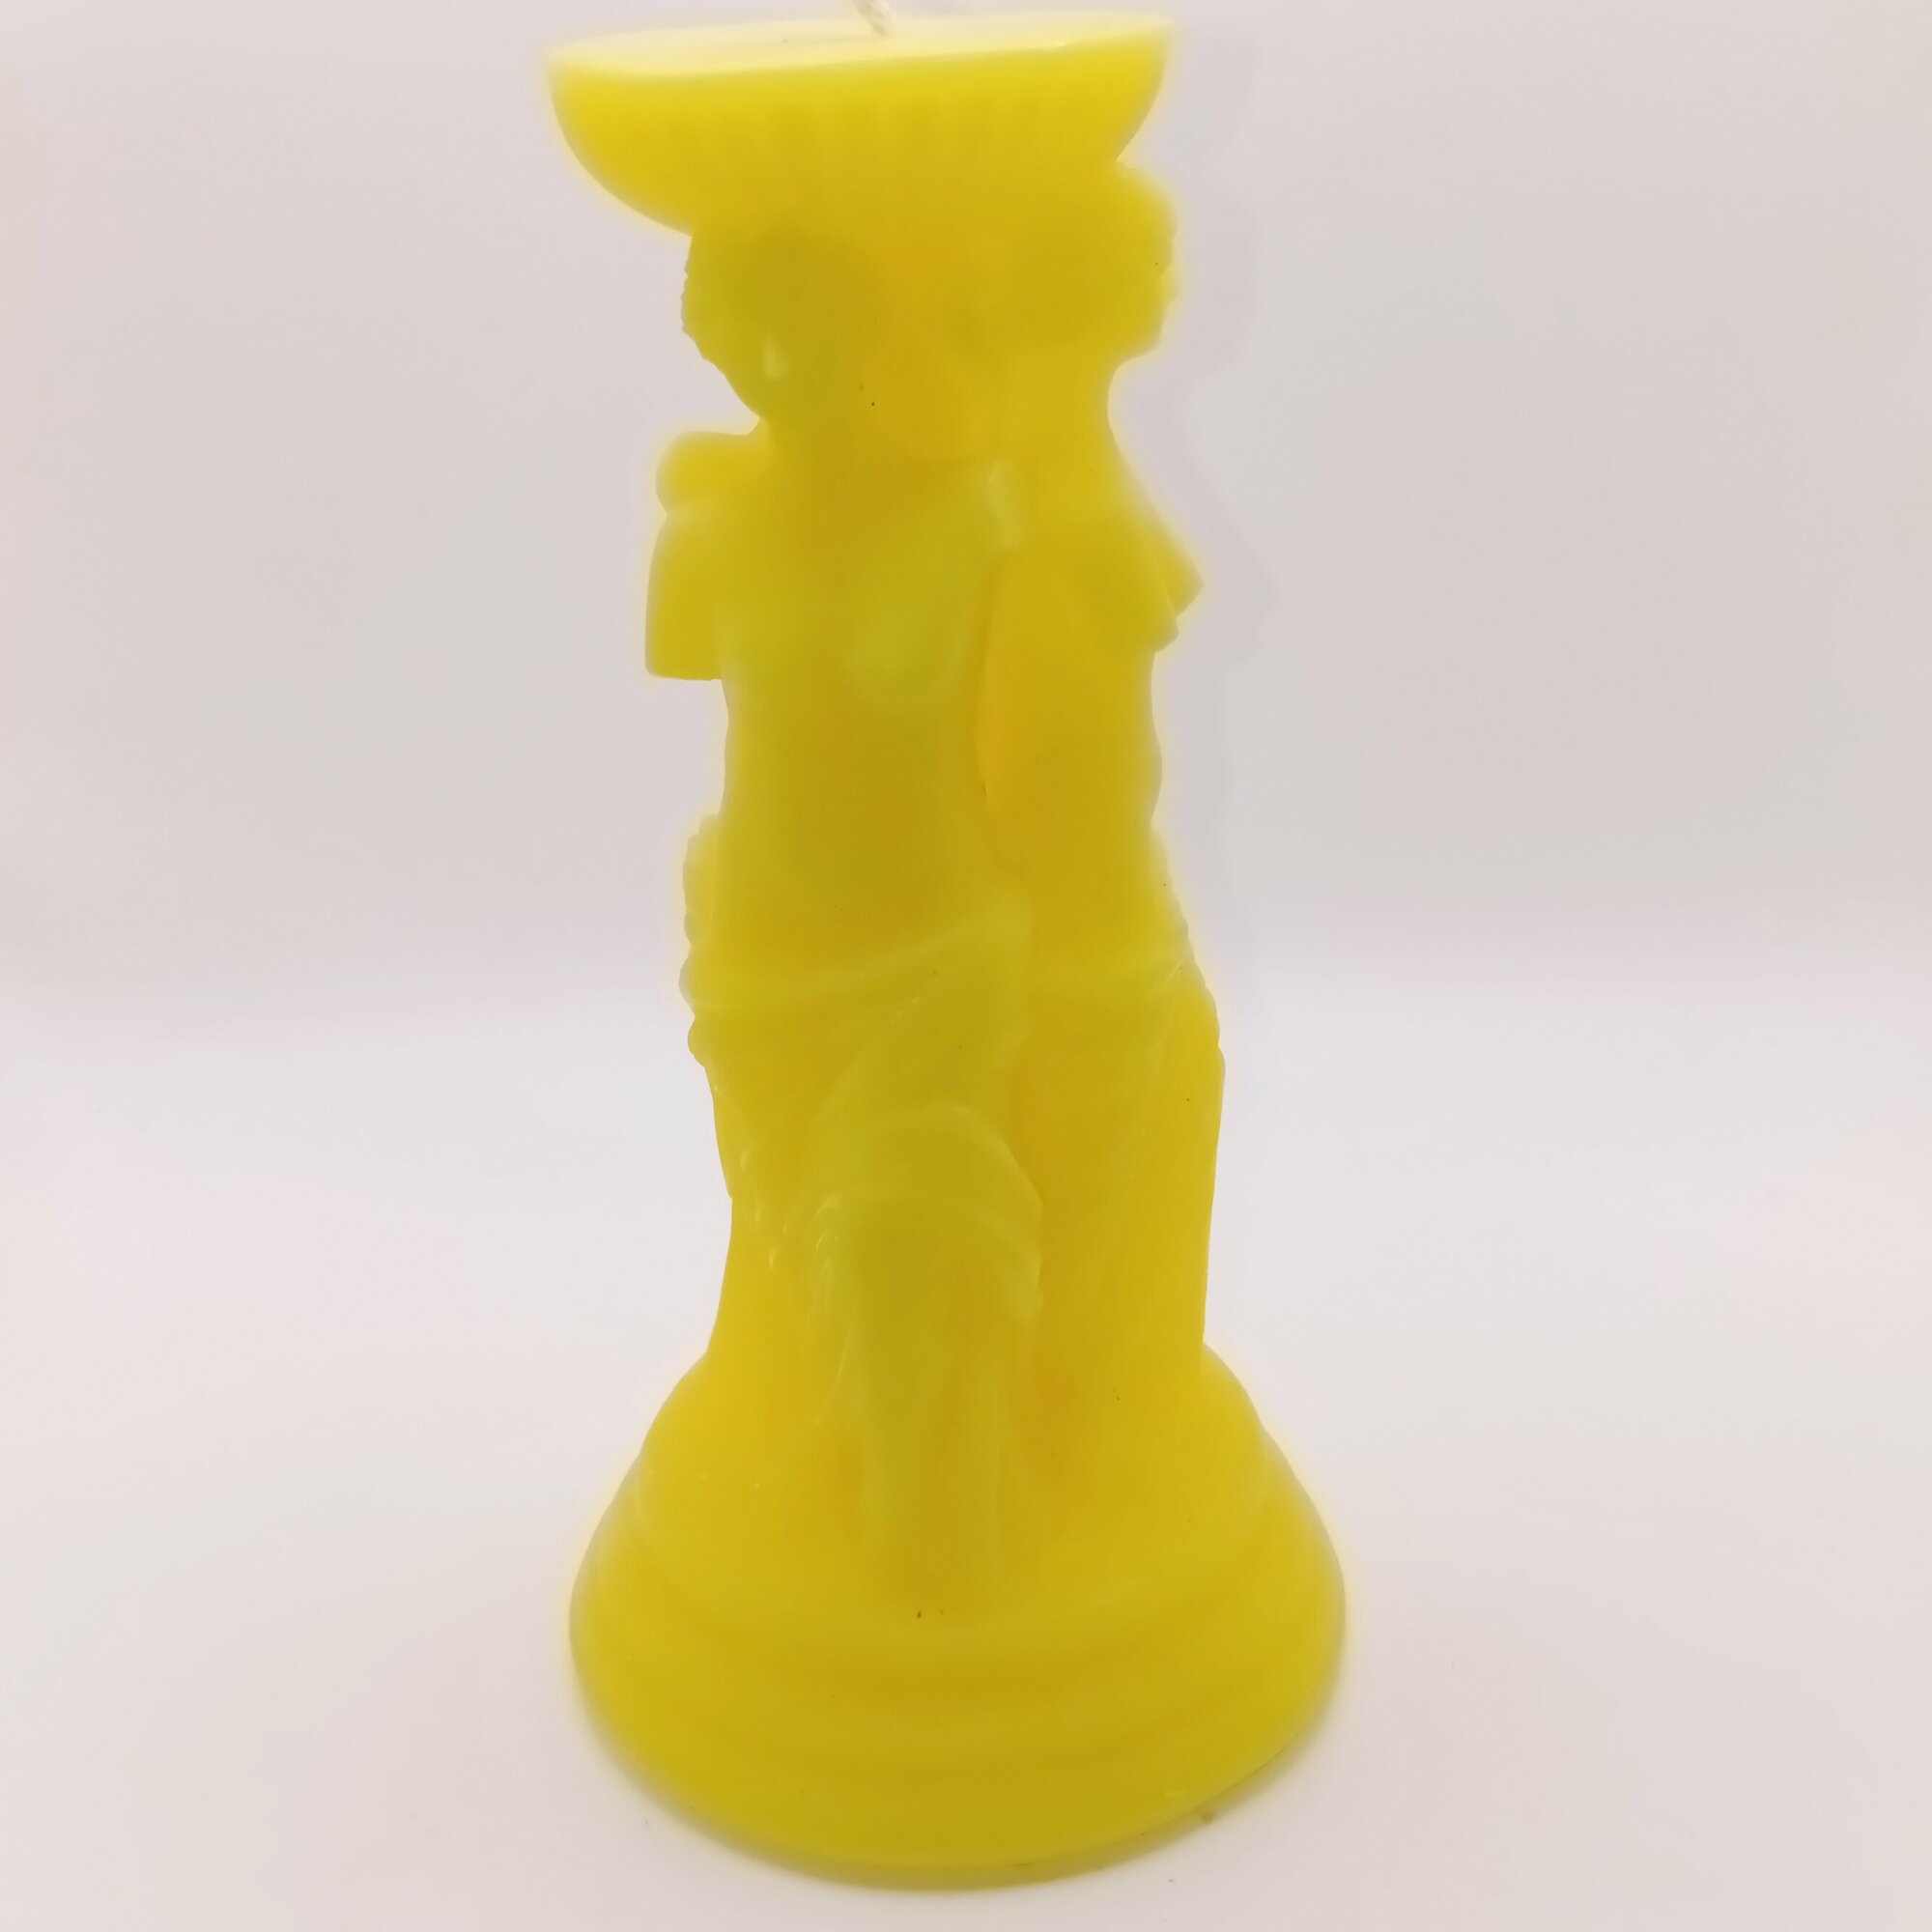 Декоративная свеча Rusin & Co "Венера" желтого цвета